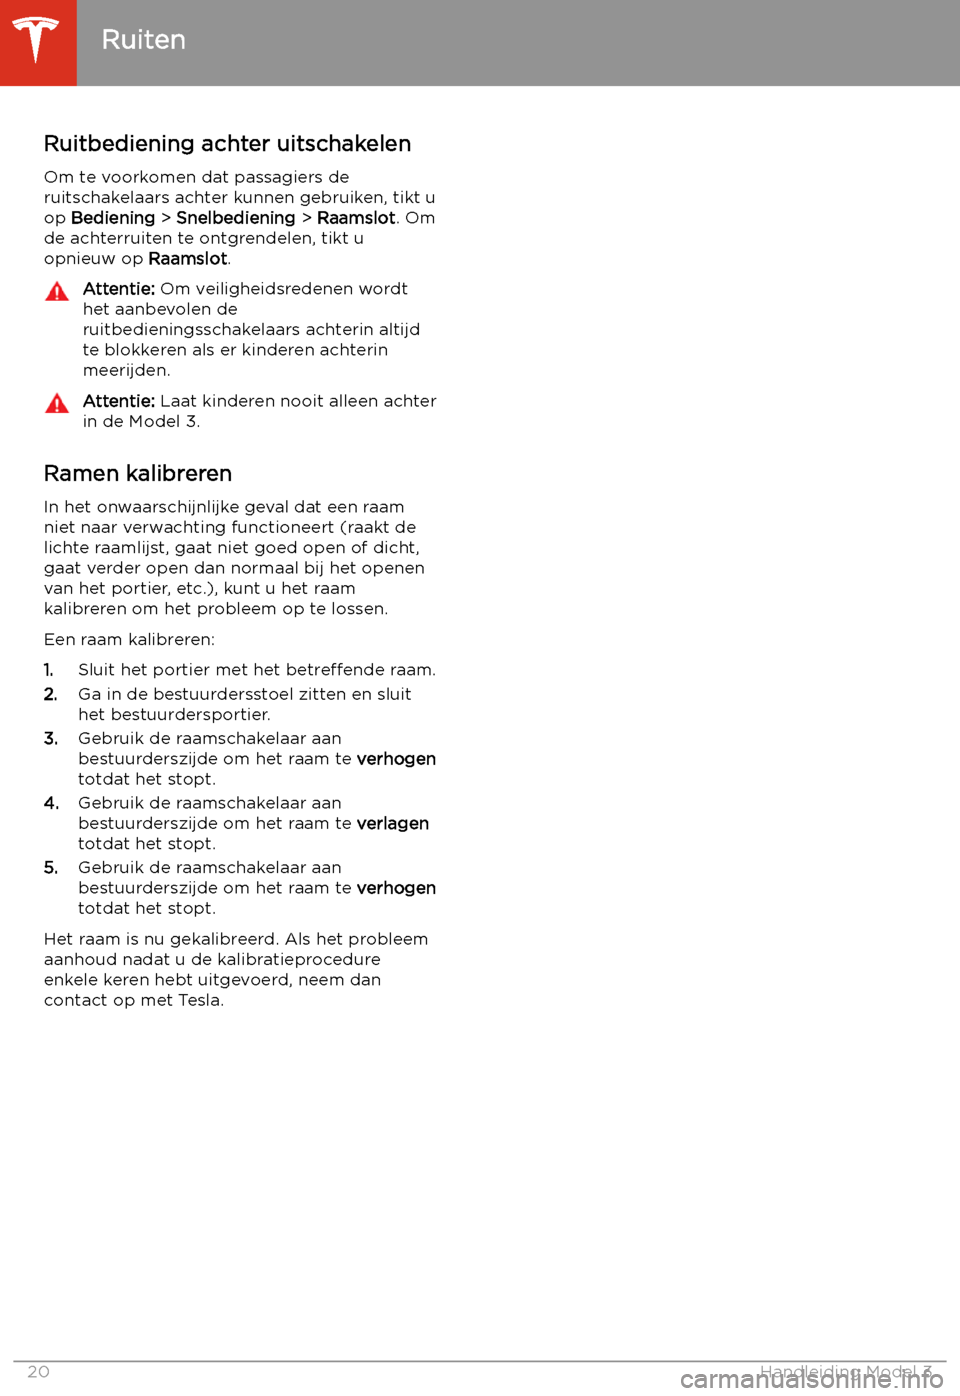 TESLA MODEL 3 2020  Handleiding (in Dutch) Ruitbediening achter uitschakelenOm te voorkomen dat passagiers de
ruitschakelaars achter kunnen gebruiken, tikt u
op  Bediening  > Snelbediening  > Raamslot . Om
de achterruiten te ontgrendelen, tikt